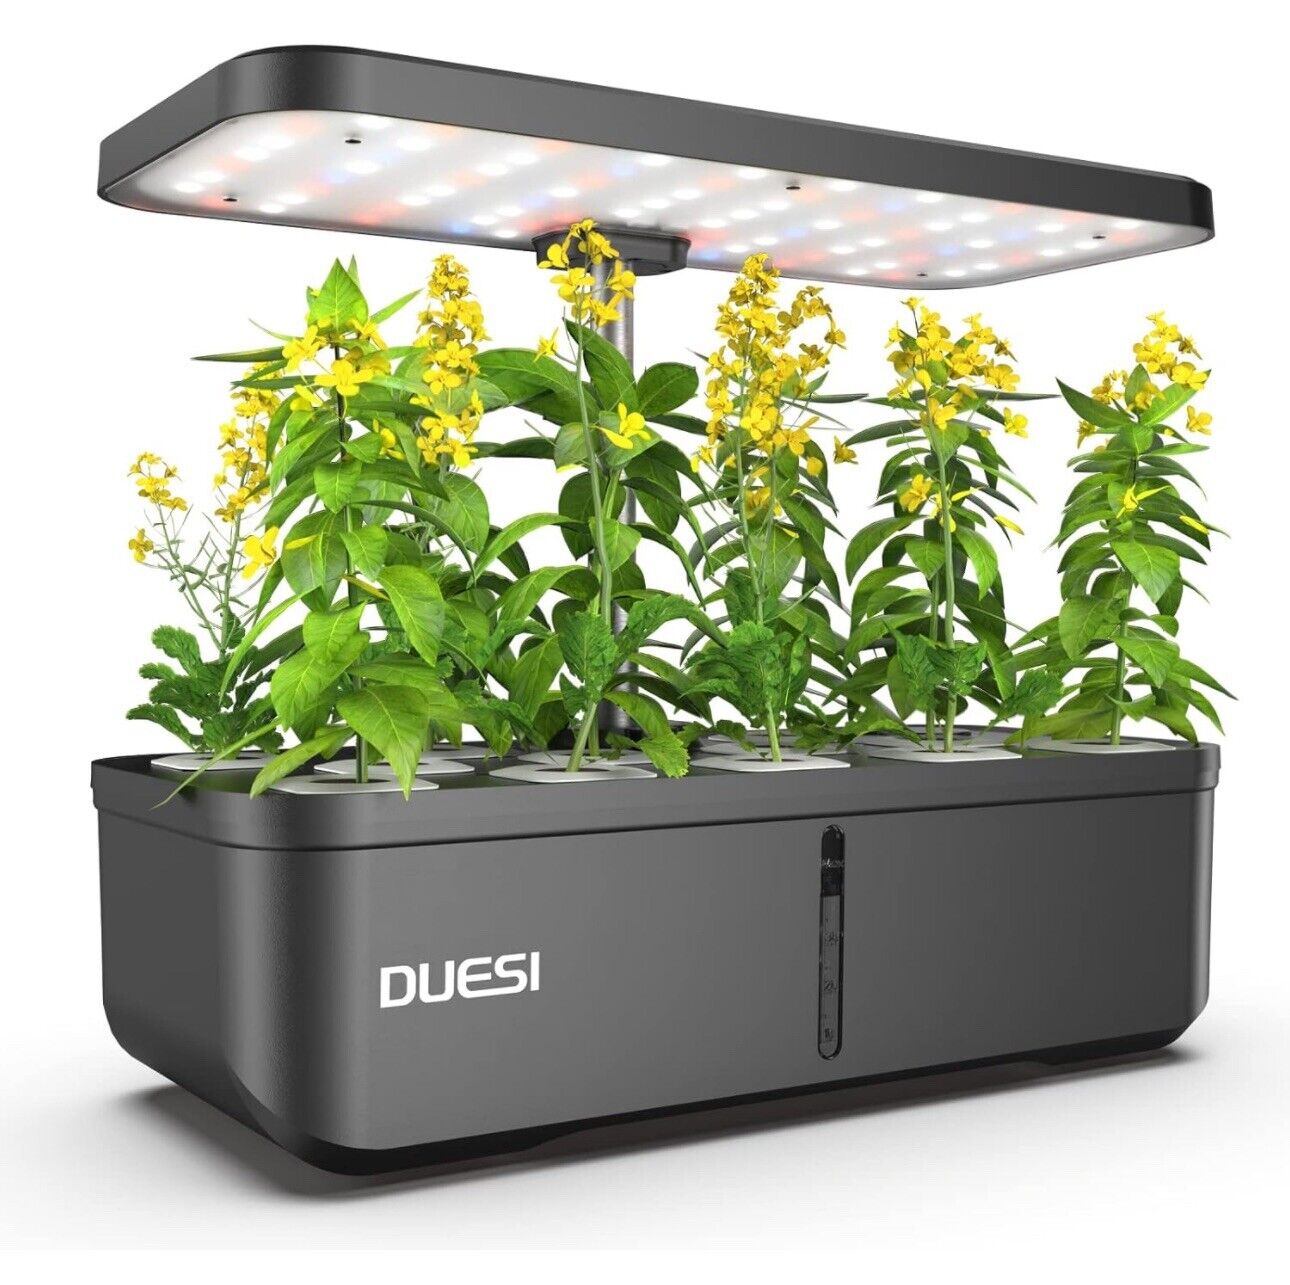 Duesi Hydroponics Growing System Indoor Garden Kit 12Pods Indoor Herb Garden